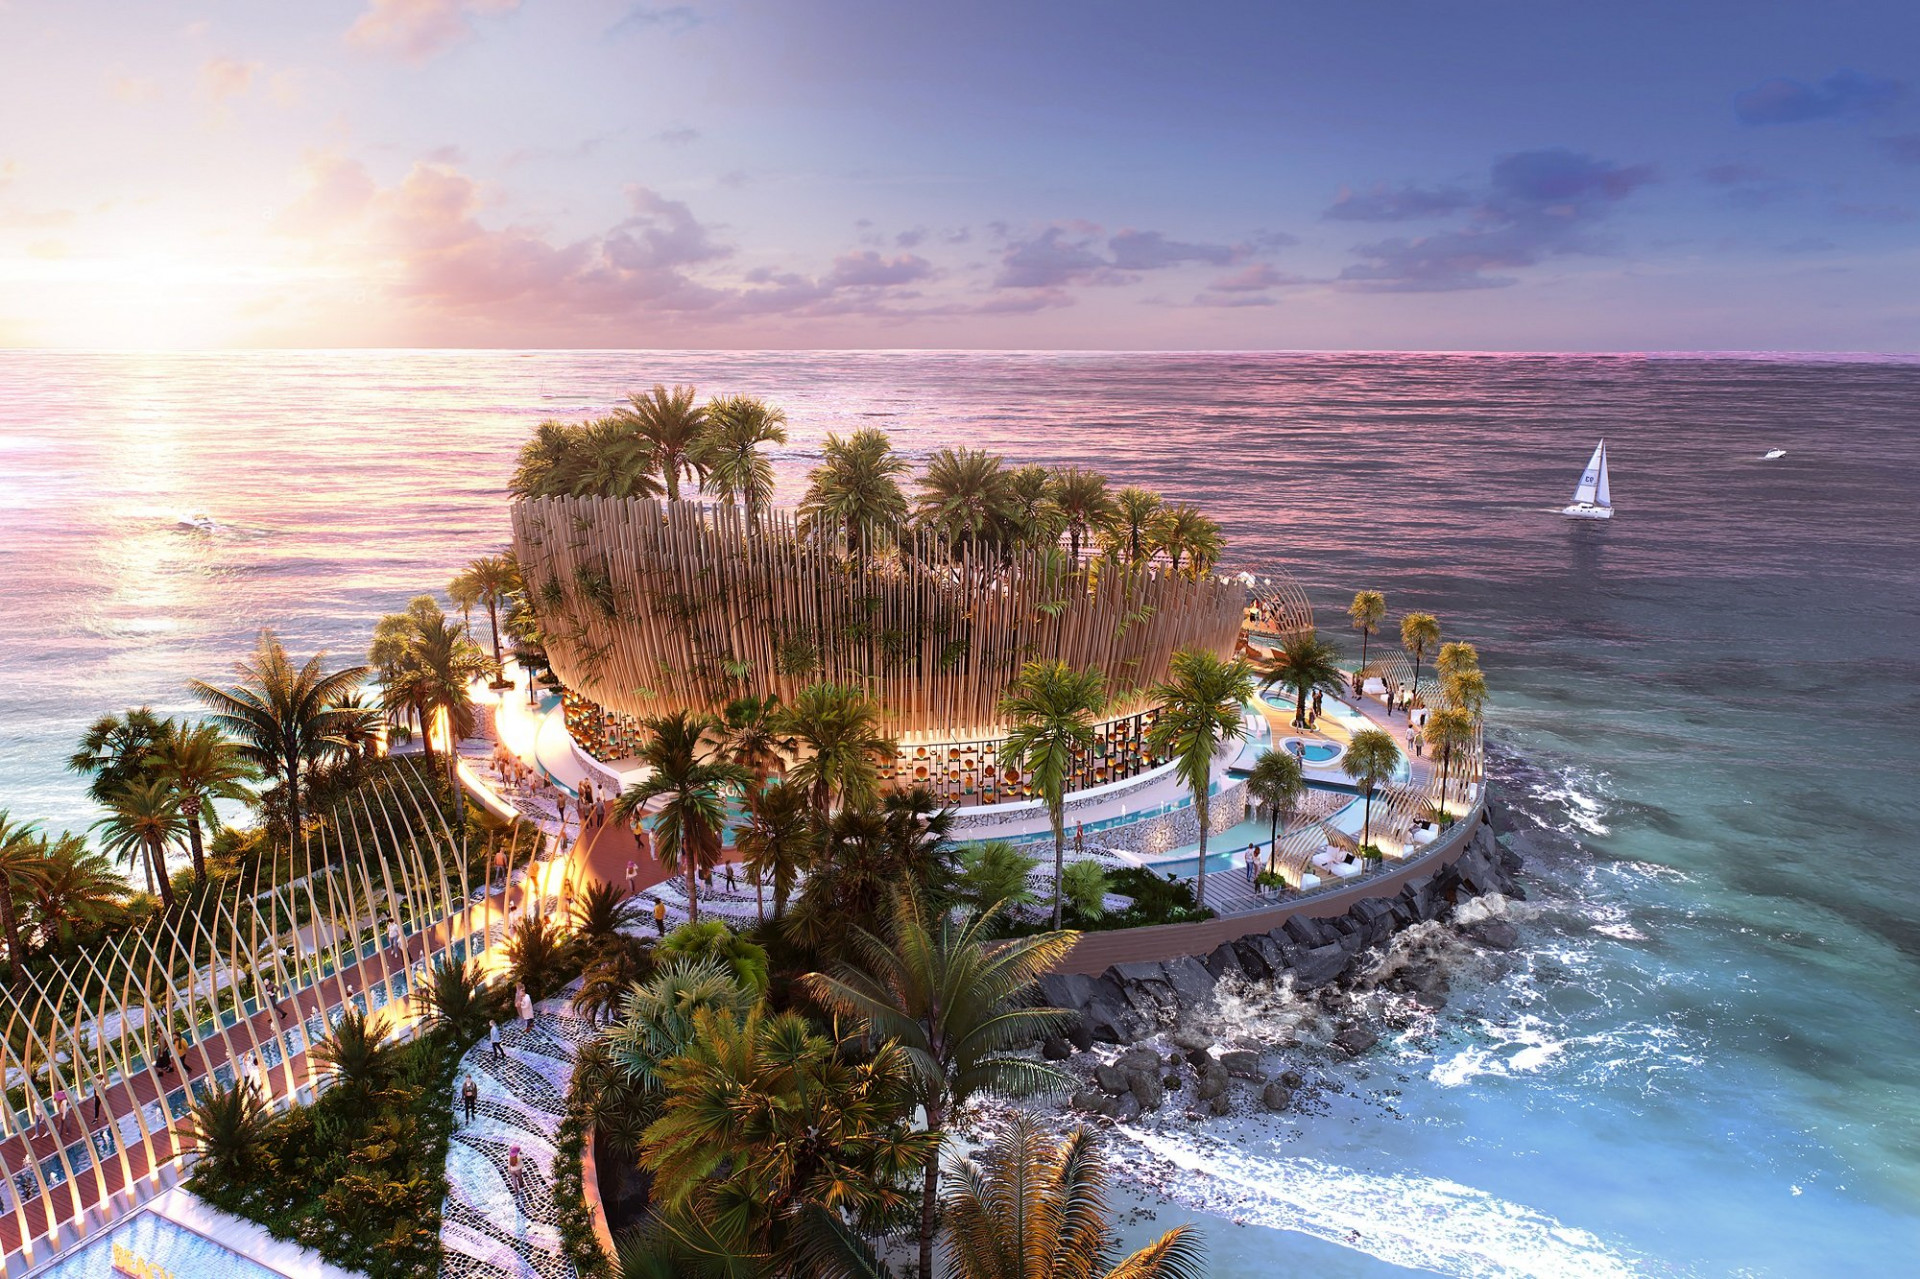 Câu lạc bộ biển Azure Beach (beach club) và Attiko (high energy lounge) hứa hẹn mang đến làn gió mới cho du lịch Nha Trang và thúc đẩy phát triển kinh tế đêm sôi động.